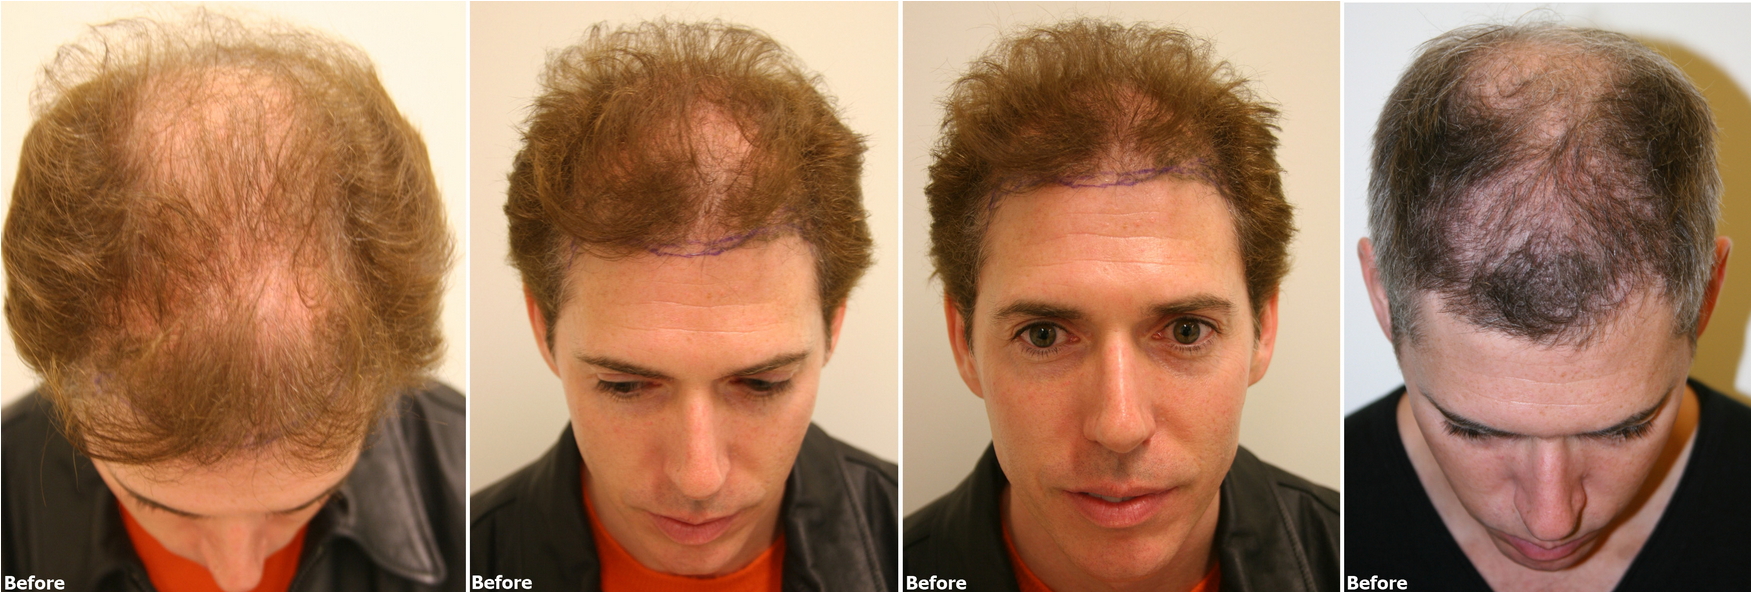 Alvi Armani Clinic Hair restoration result 8,000 grafts - Hair Transplant -  HairSite - Hair Restoration Forum